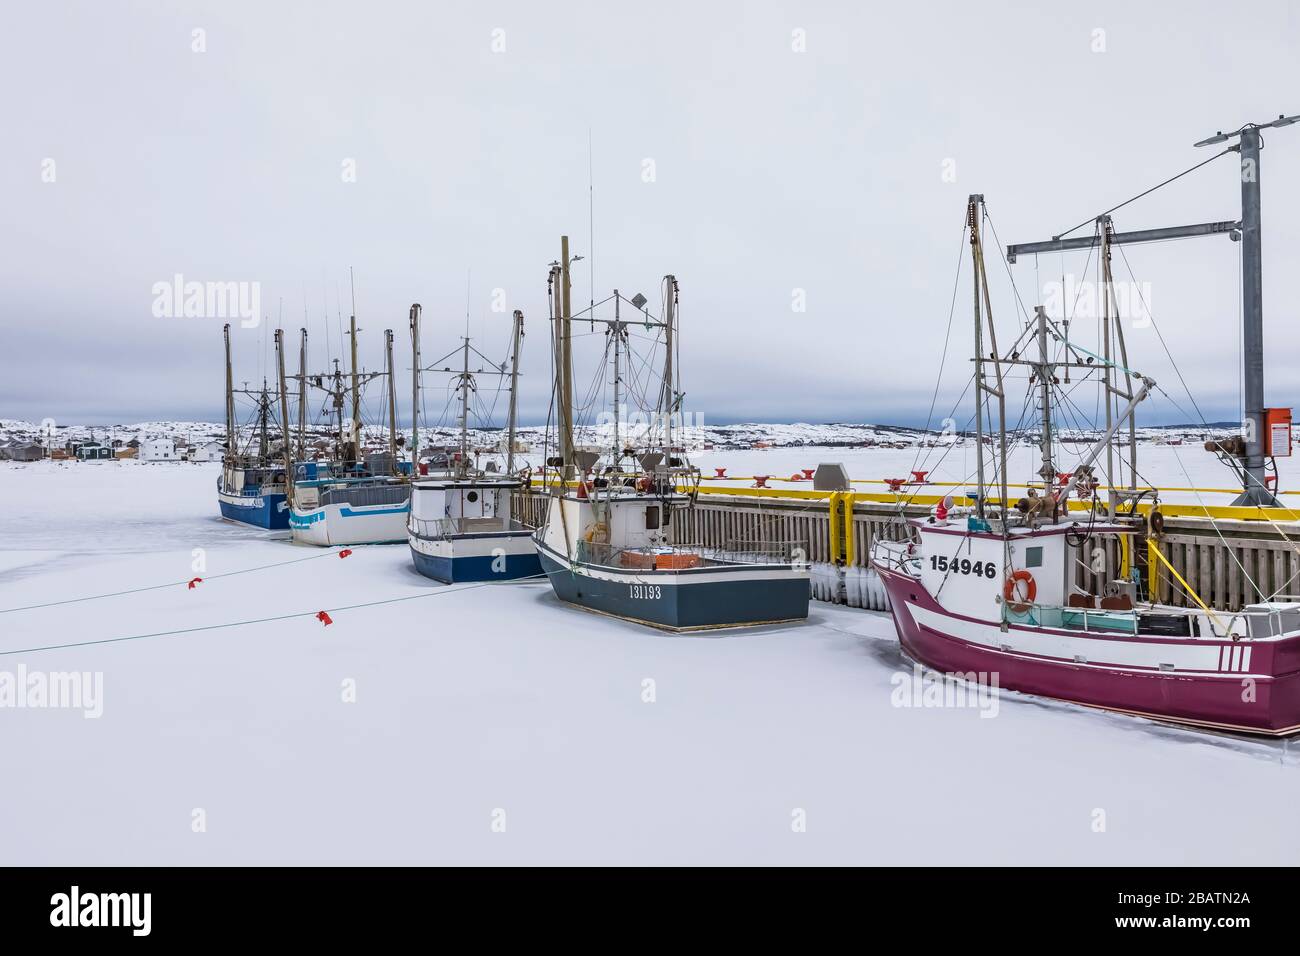 Bateaux de pêche ancrés dans le port de Fogo, pris dans la glace à Terre-Neuve, Canada Banque D'Images